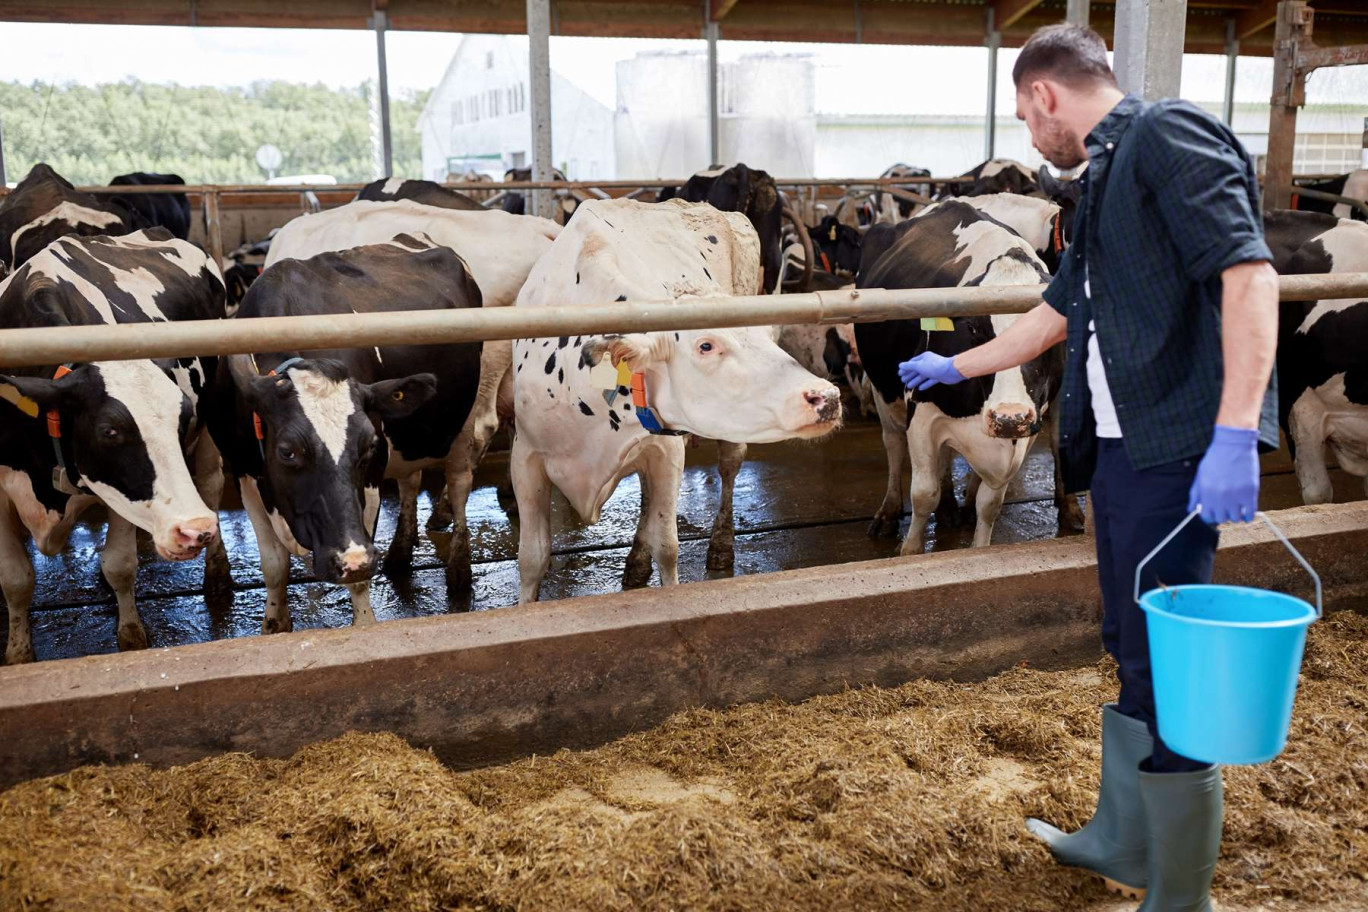 La baisse du nombre d'éleveurs en Hauts-de-France s’explique notamment par la faiblesse des marges réalisées sur les productions animales. (c)AdobeStock